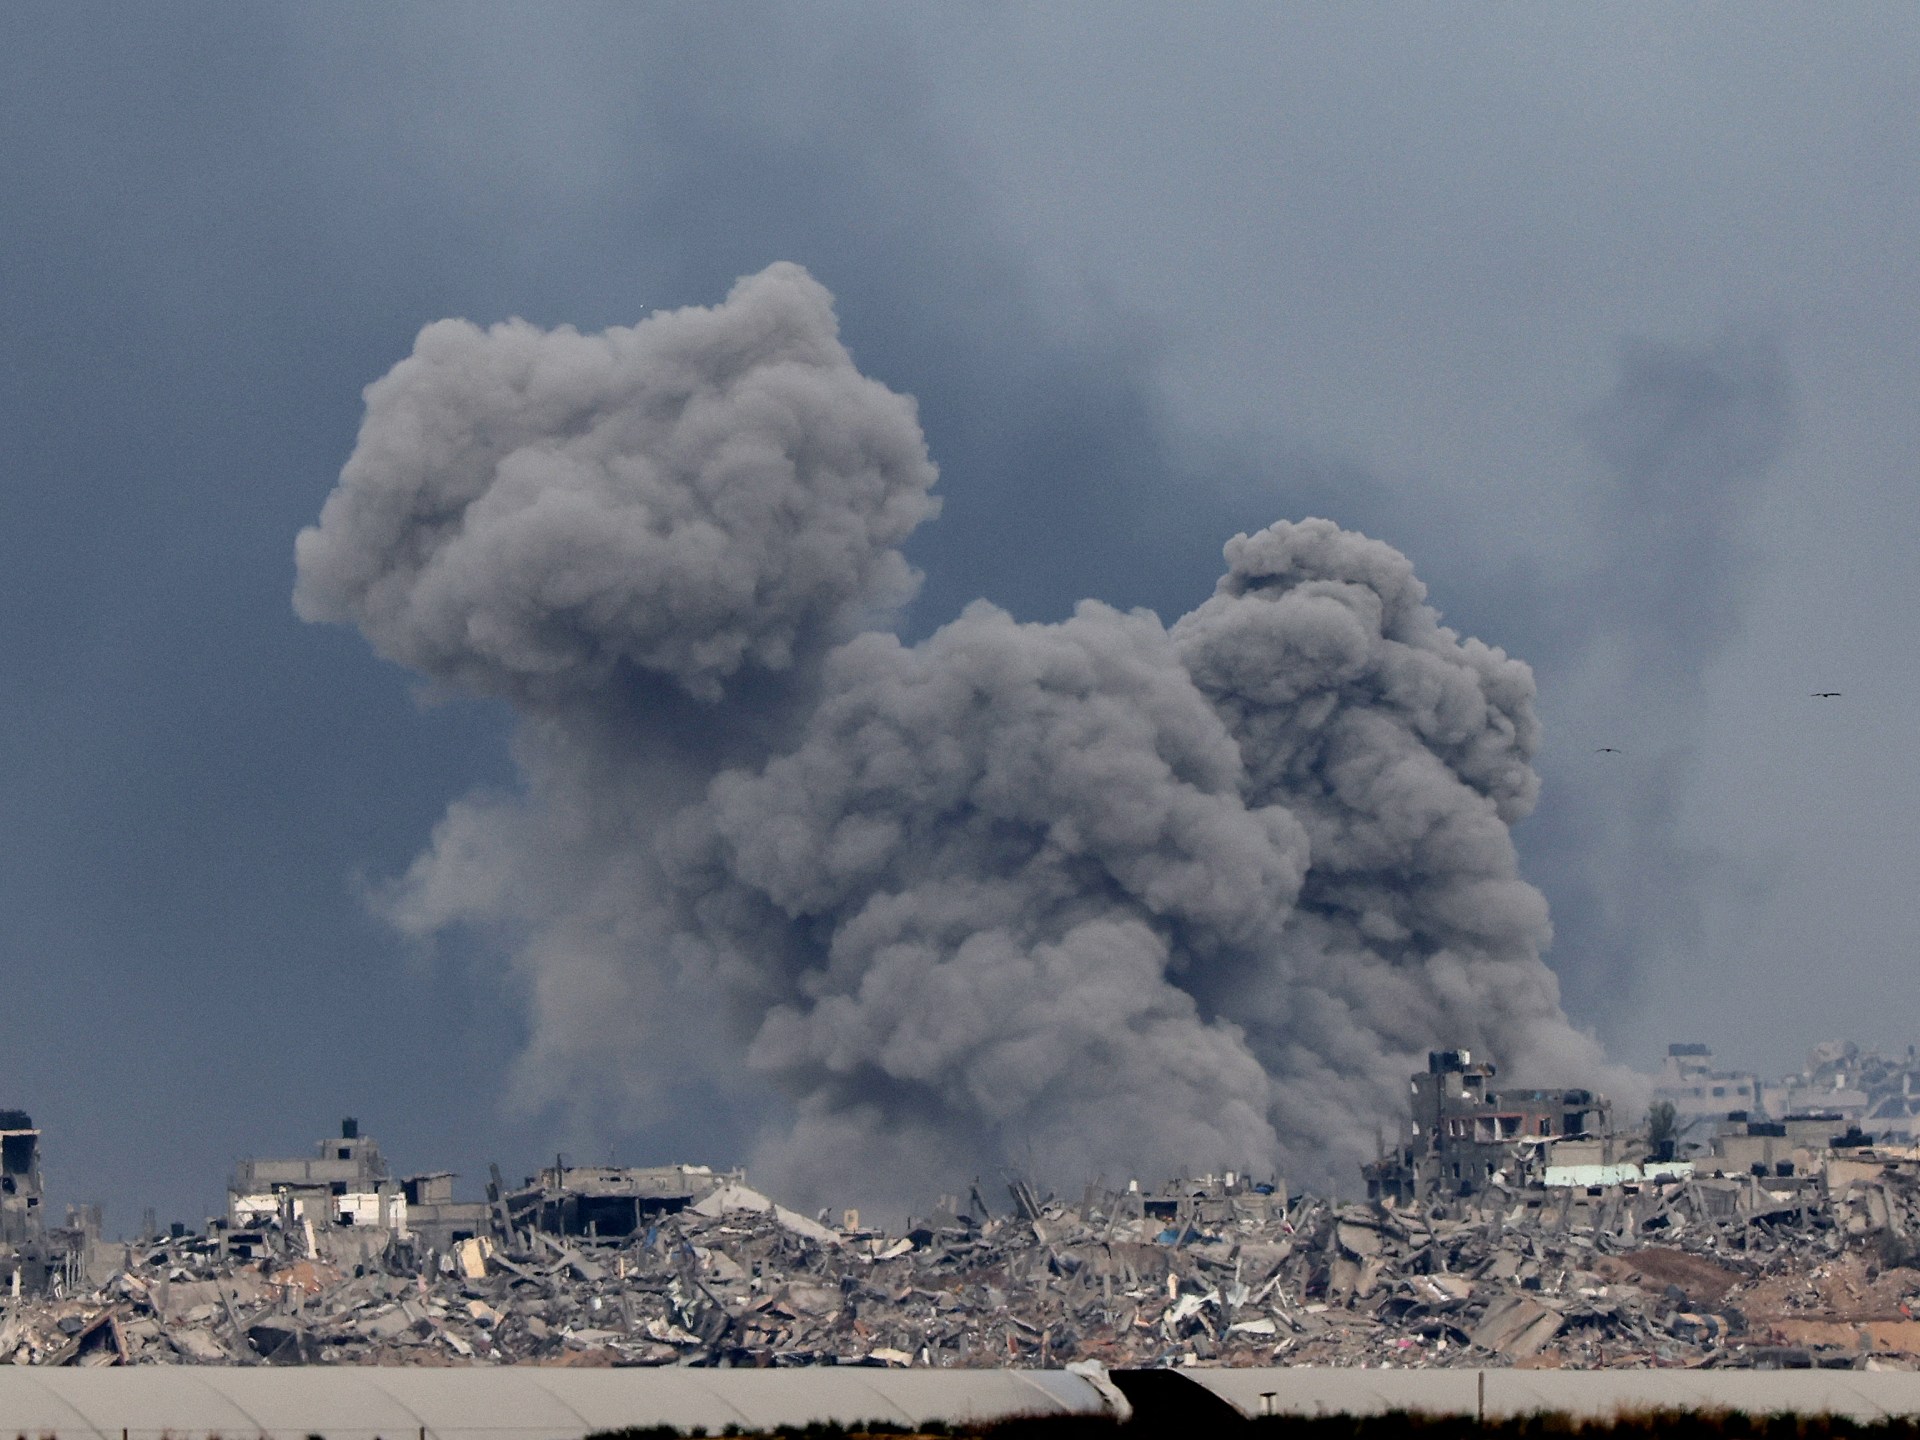 جندي إسرائيلي غضب من قرار المحكمة العليا ففجر مبنى في غزة | أخبار – البوكس نيوز